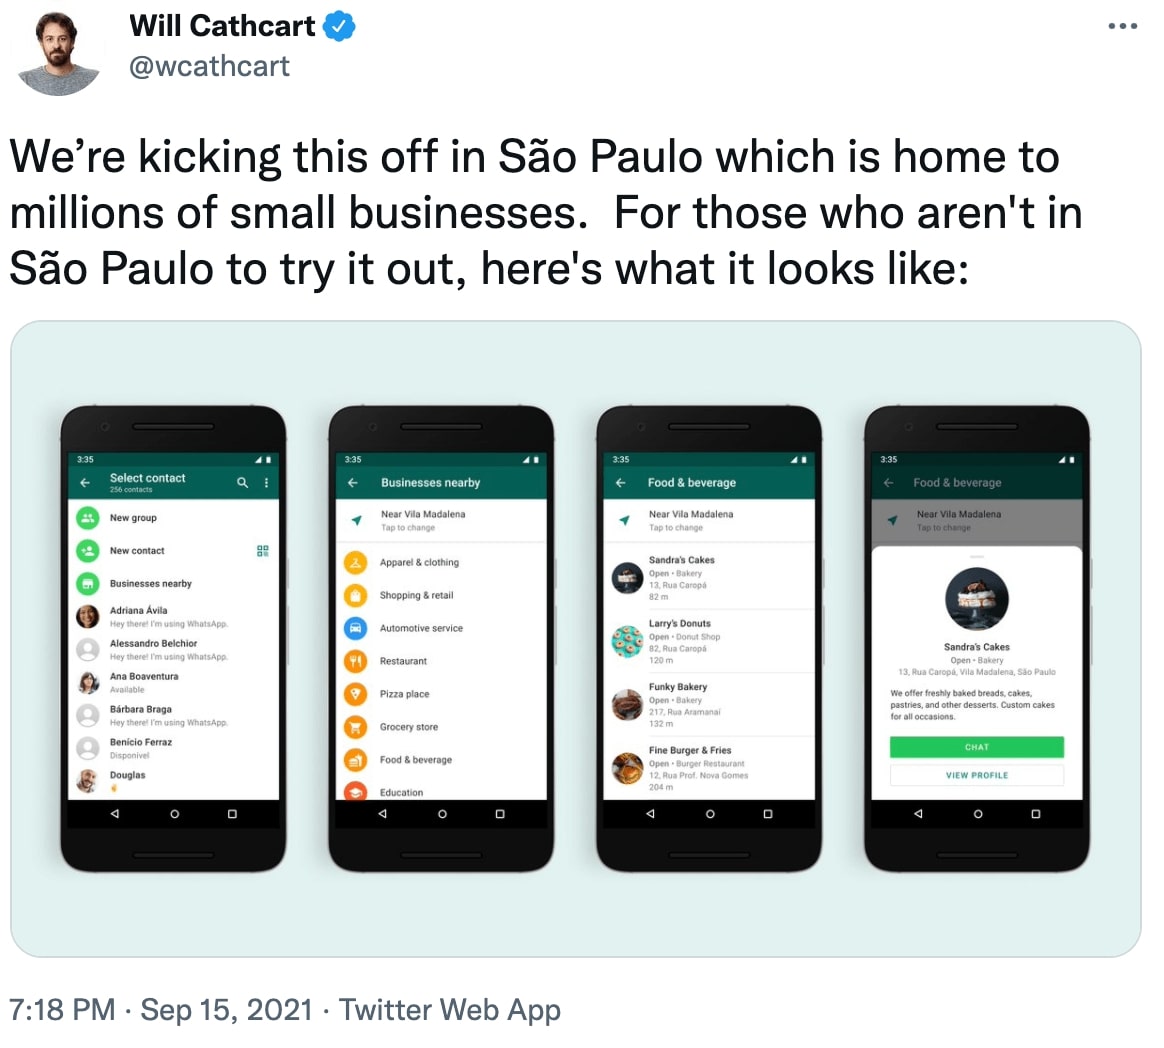 Tweet about WhatsApp Business in Brazil